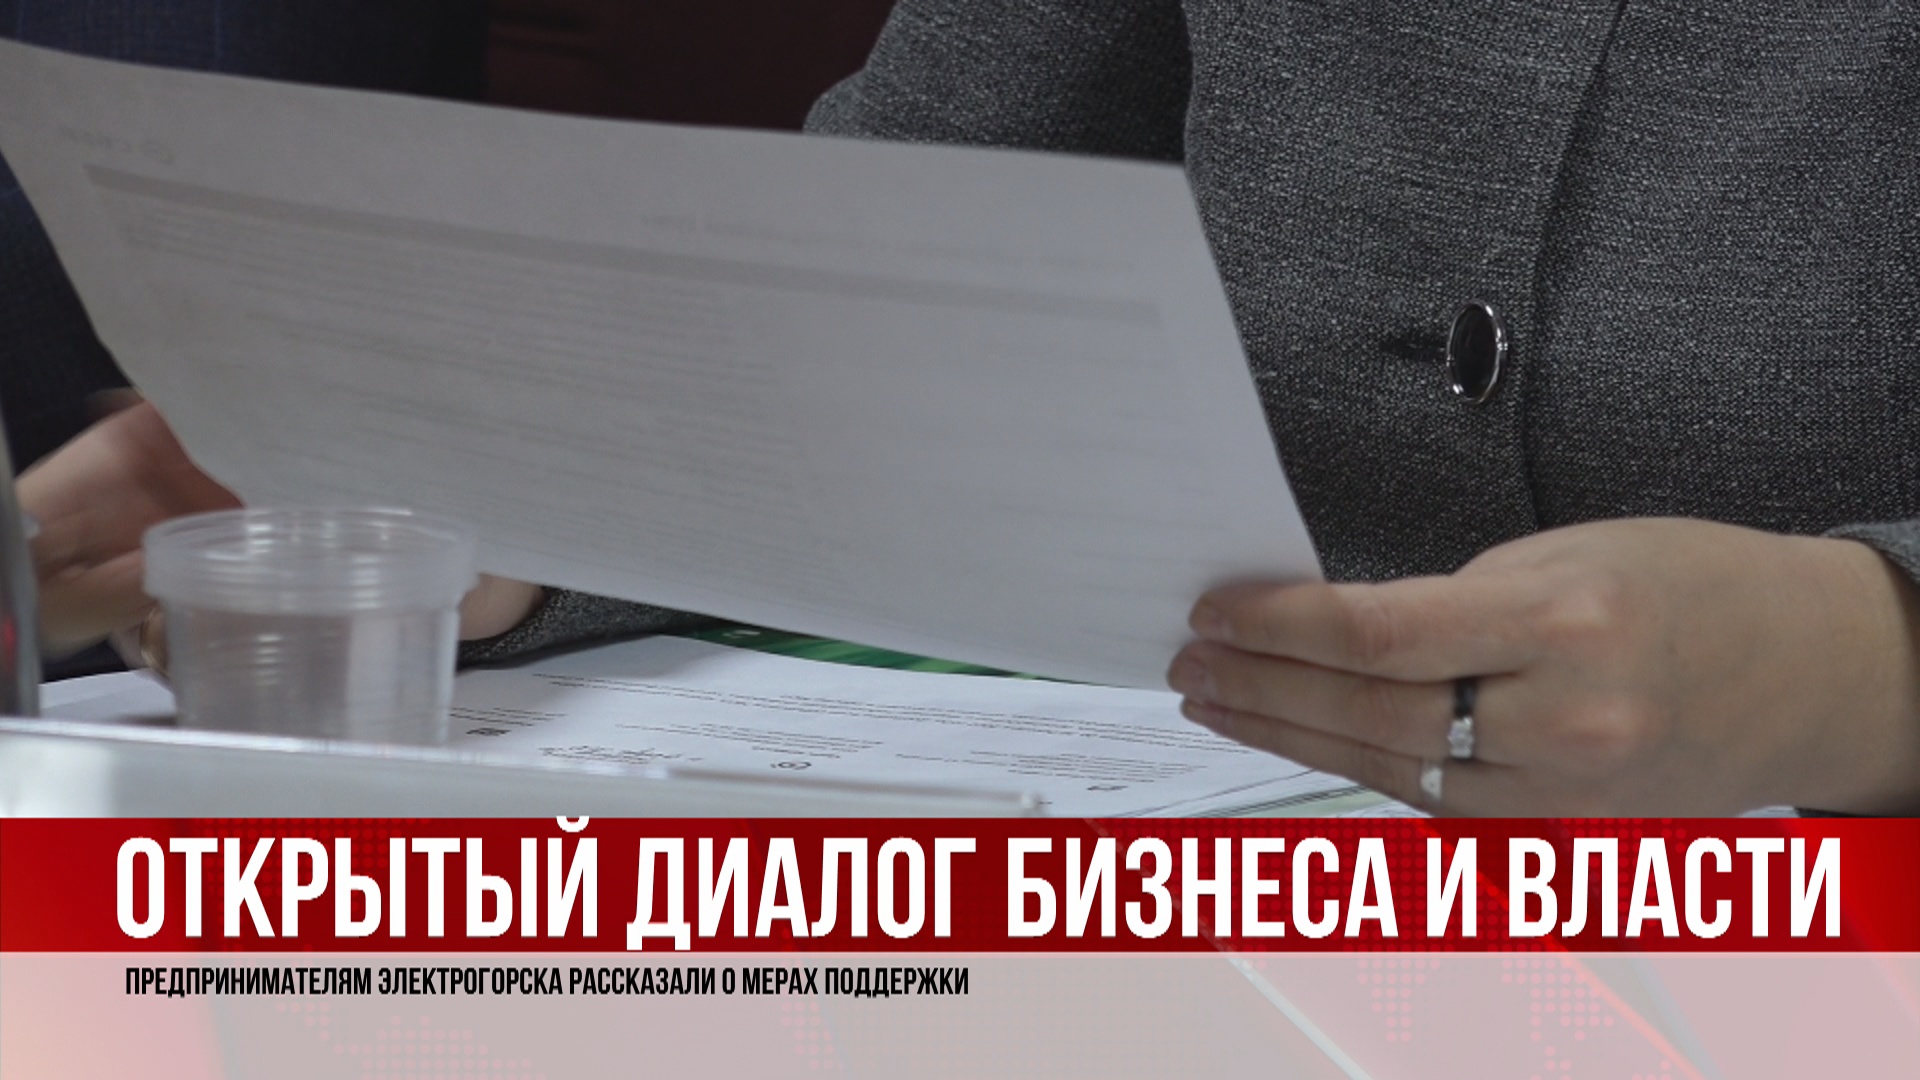 Бизнесменам Электрогорска рассказали о мерах поддержки в условиях кризиса. (23.03.22).MP4